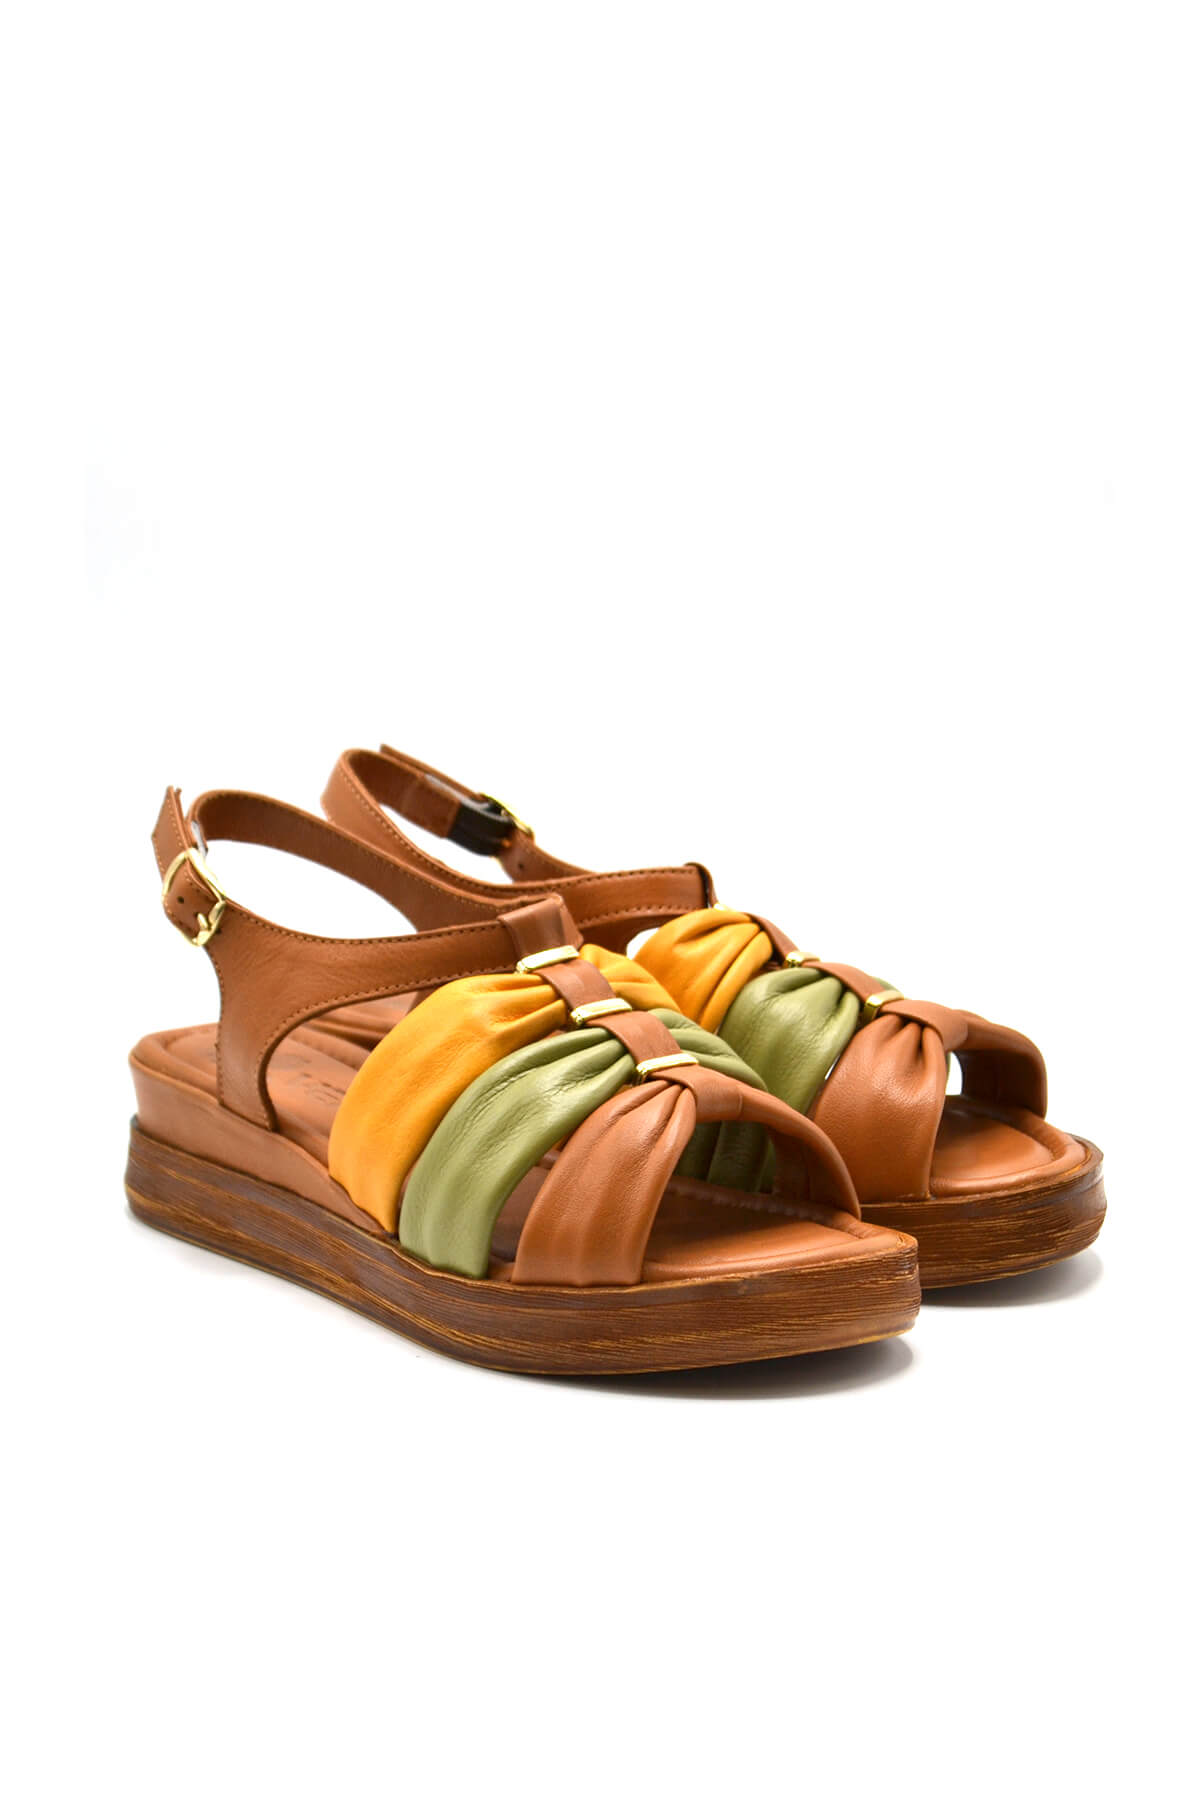 Kadın Comfort Deri Sandalet Taba 2216412Y - Thumbnail